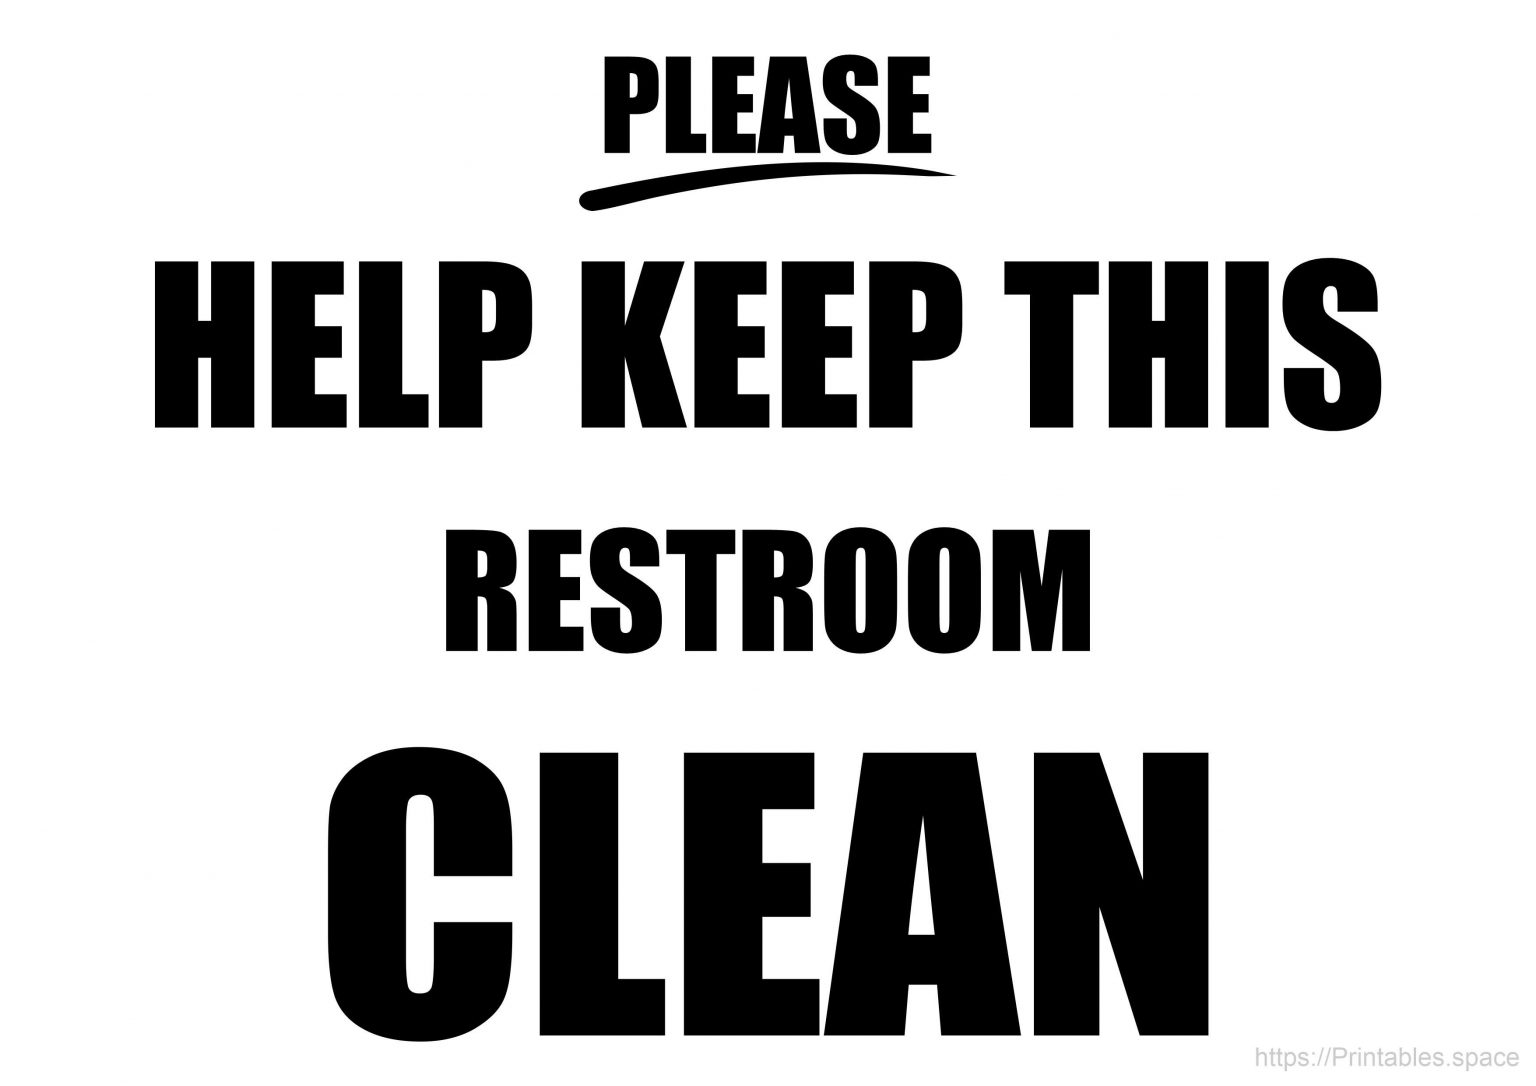 Printable Keep Toilet Clean Sign